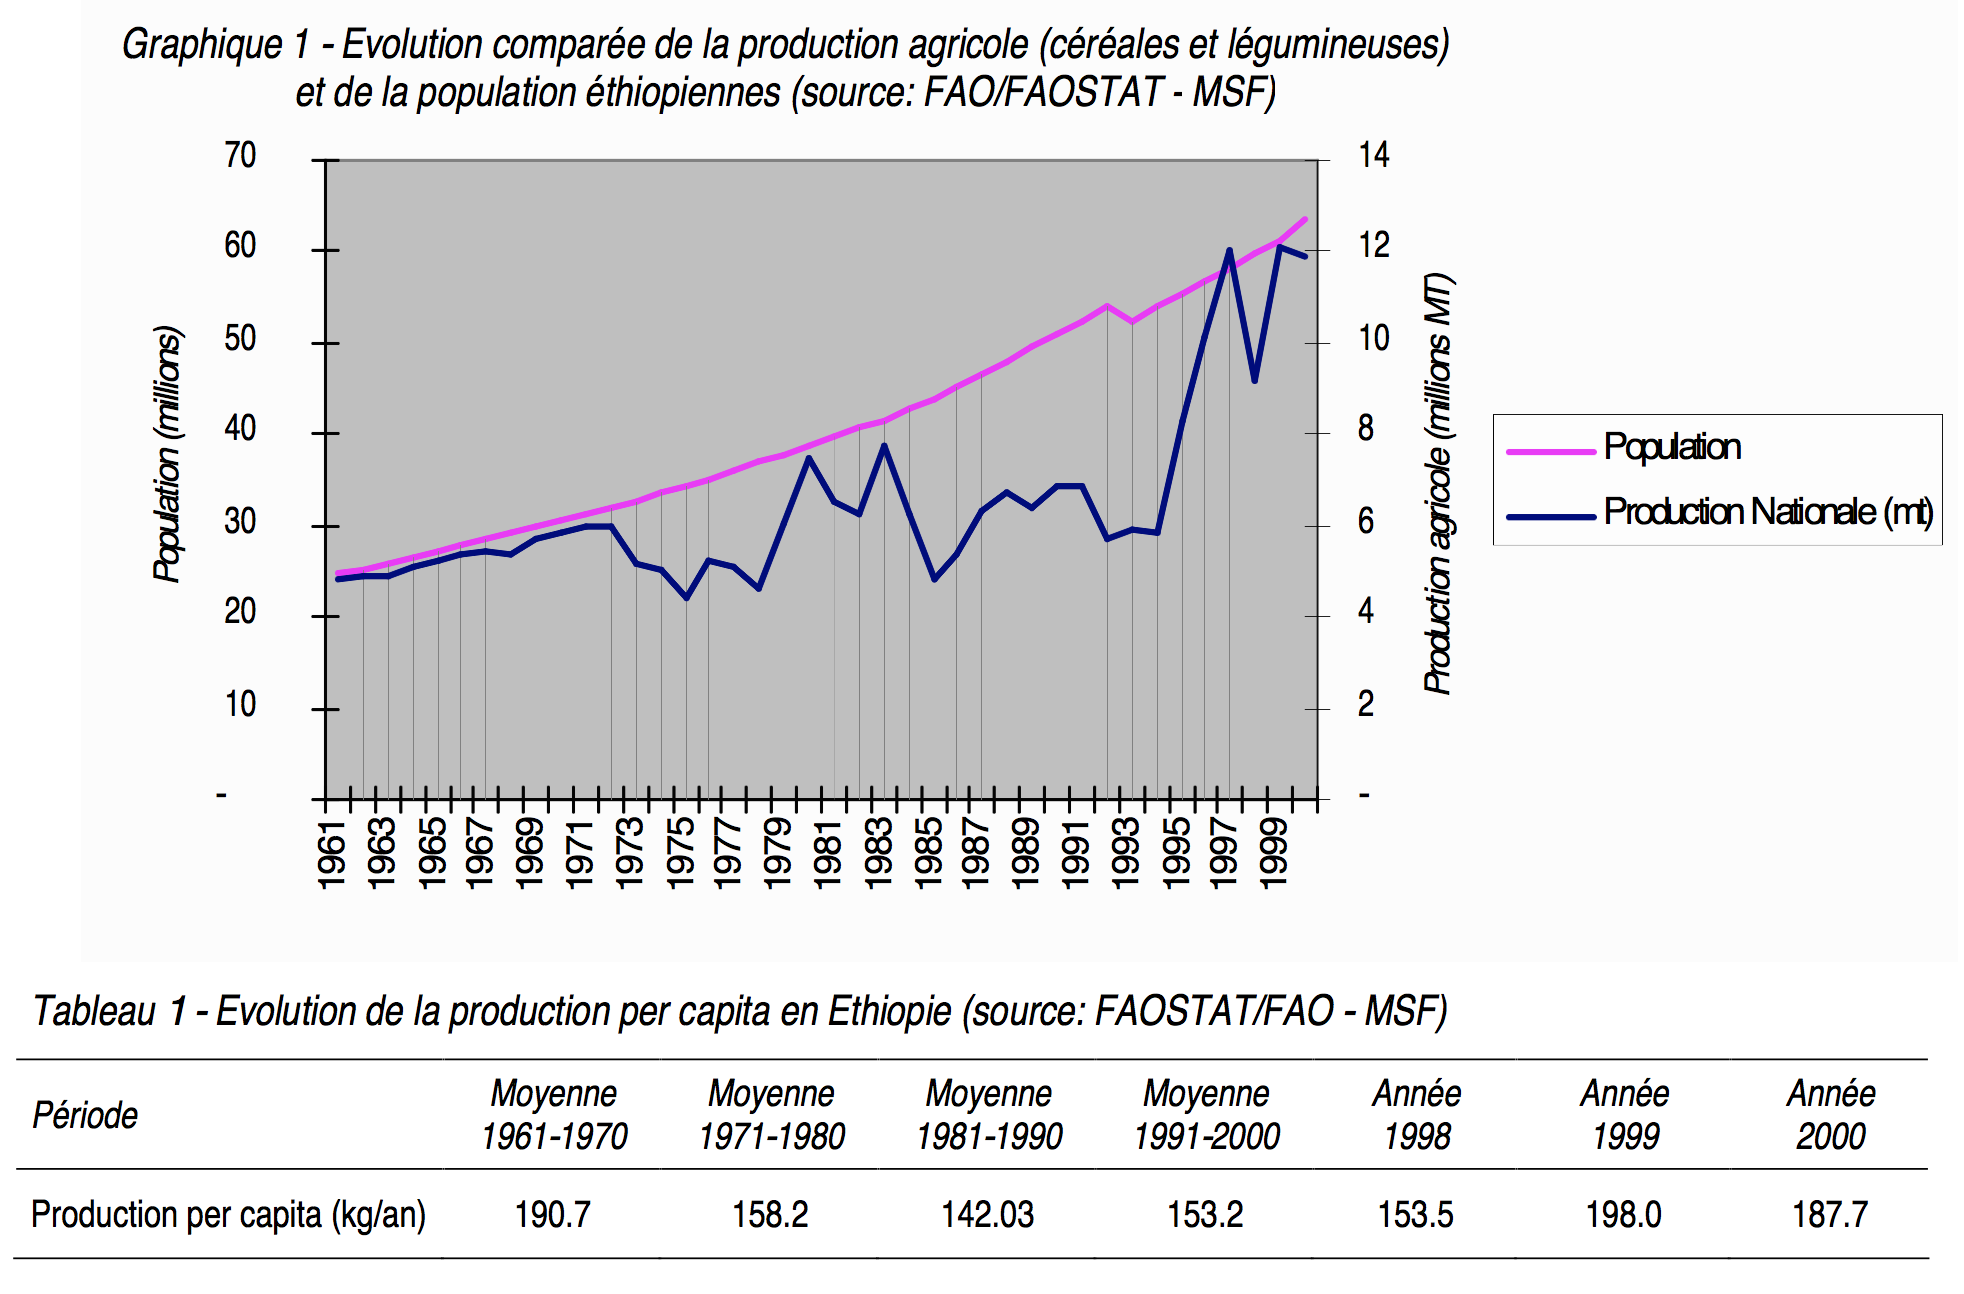 Graphique 1 Evolution comparée de la production agricole et de la population éthiopienne